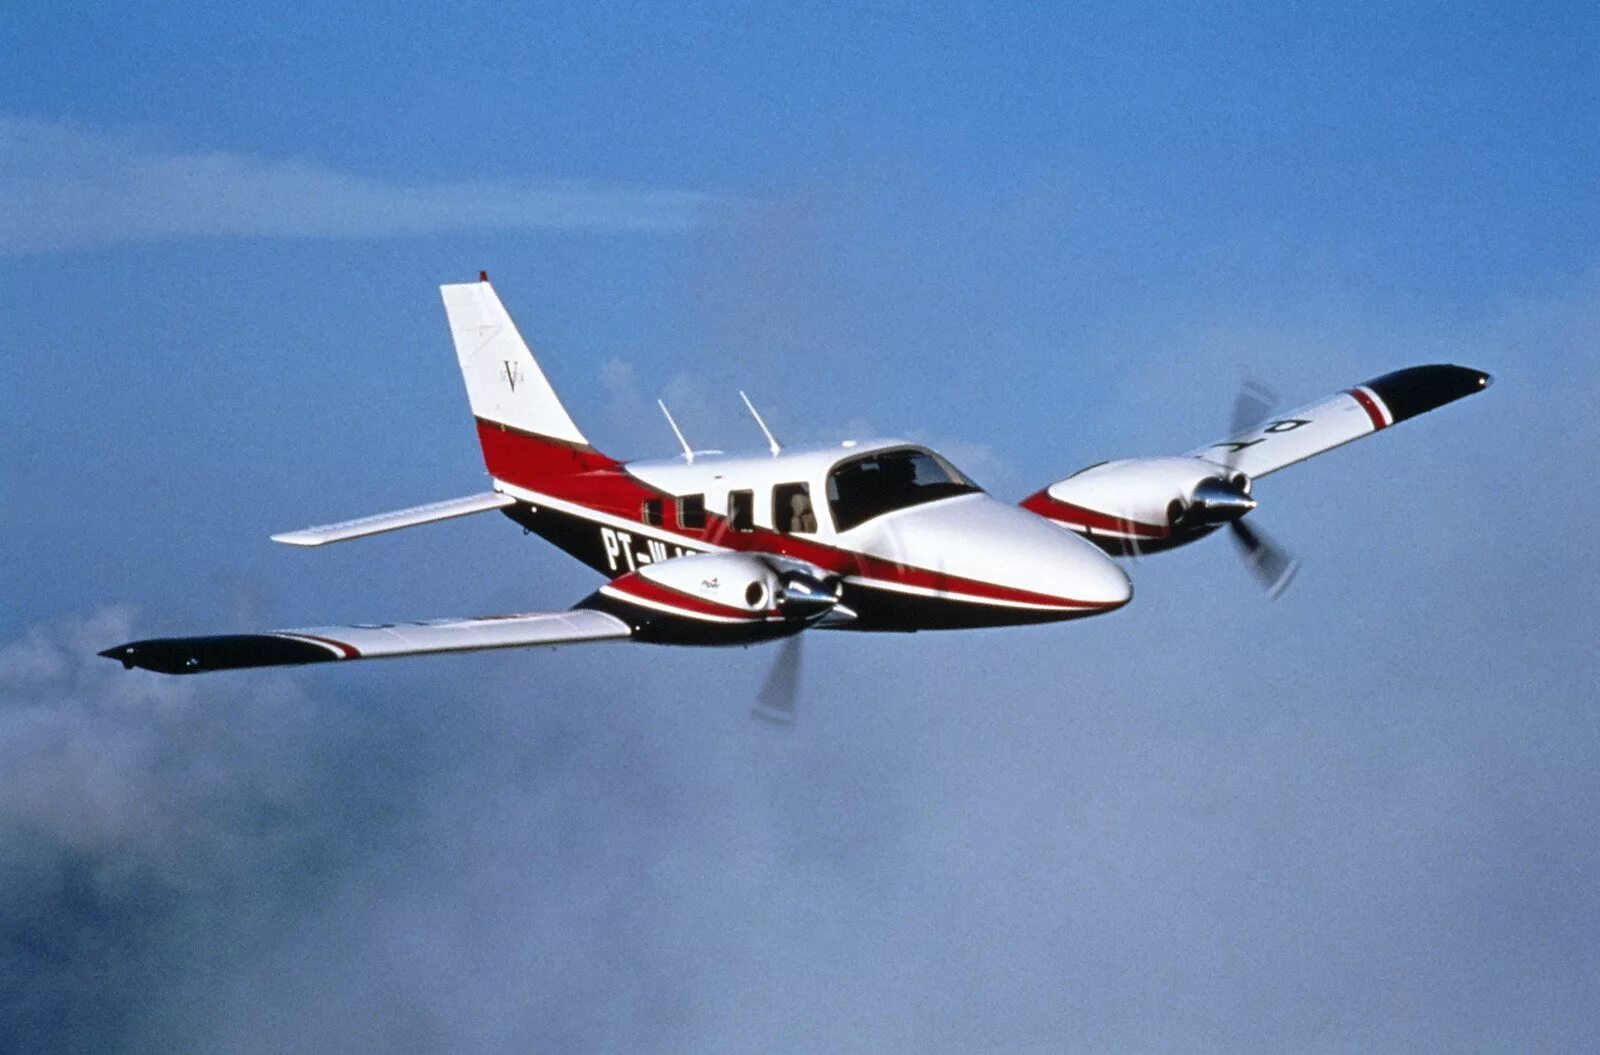 Легкая авиация. Piper Seneca v pa34. Piper pa-34 Seneca. Пайпер самолет двухмоторный. Легкомоторный самолет Piper.